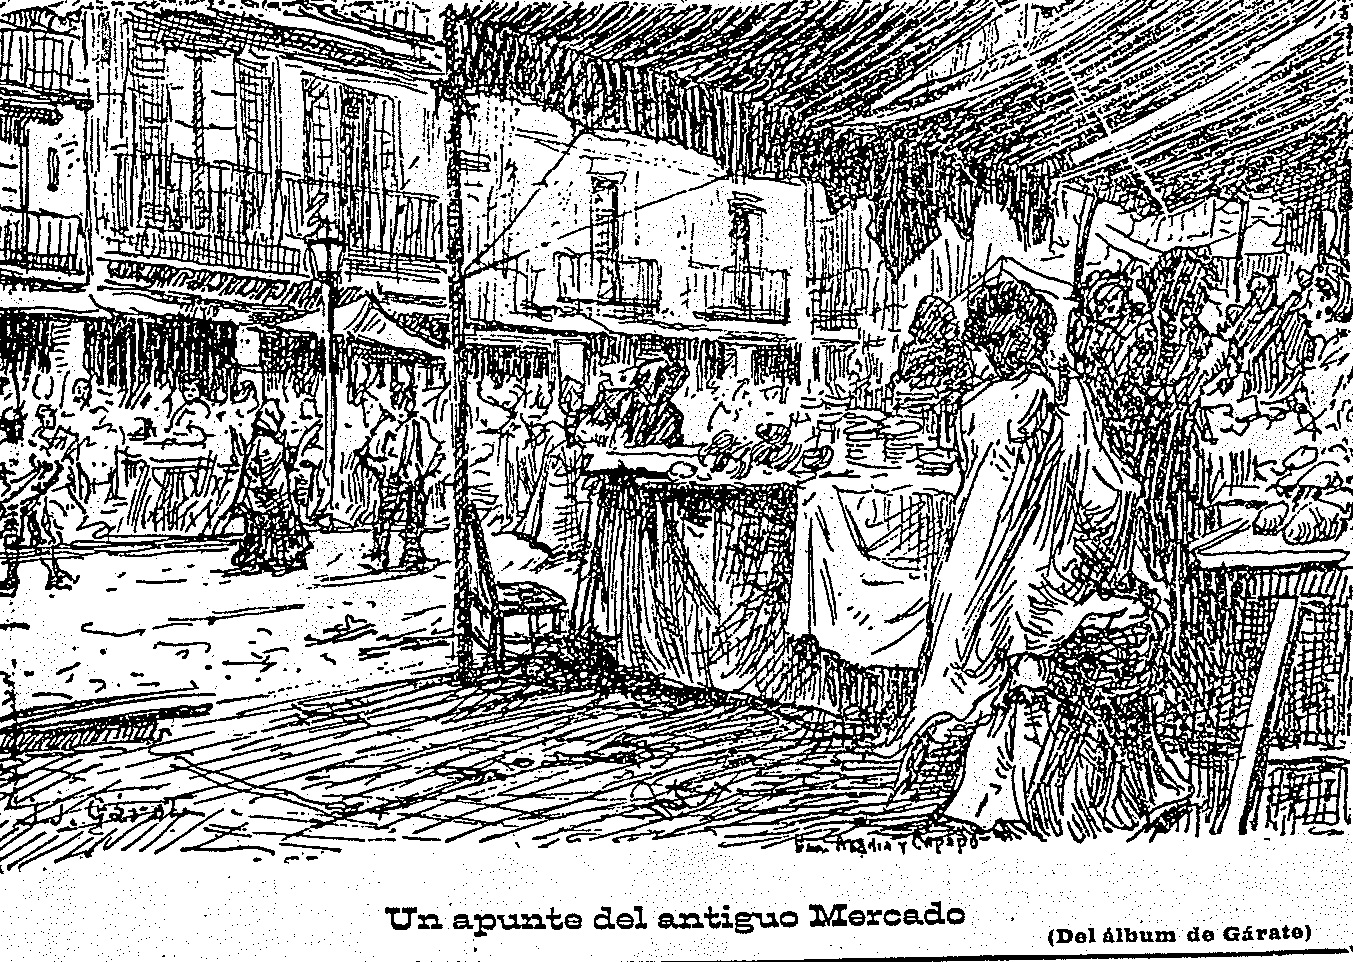 La inauguración del mercado en la prensa del 24 de junio de 1903